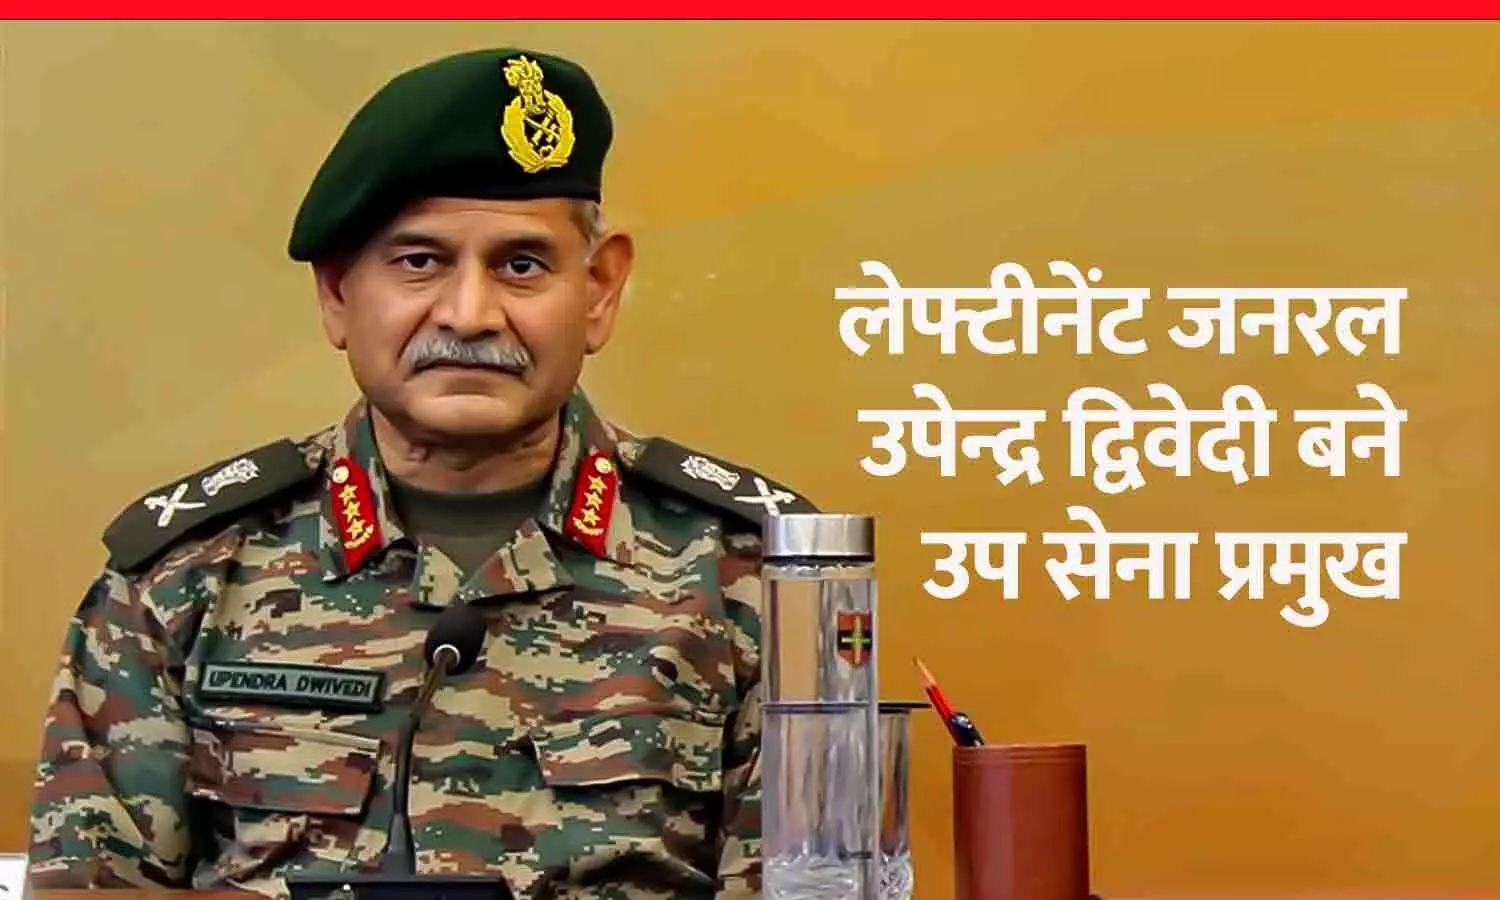 रीवा के उपेन्द्र द्विवेदी बने उप सेना प्रमुख, 15 को पदभार ग्रहण करेंगे